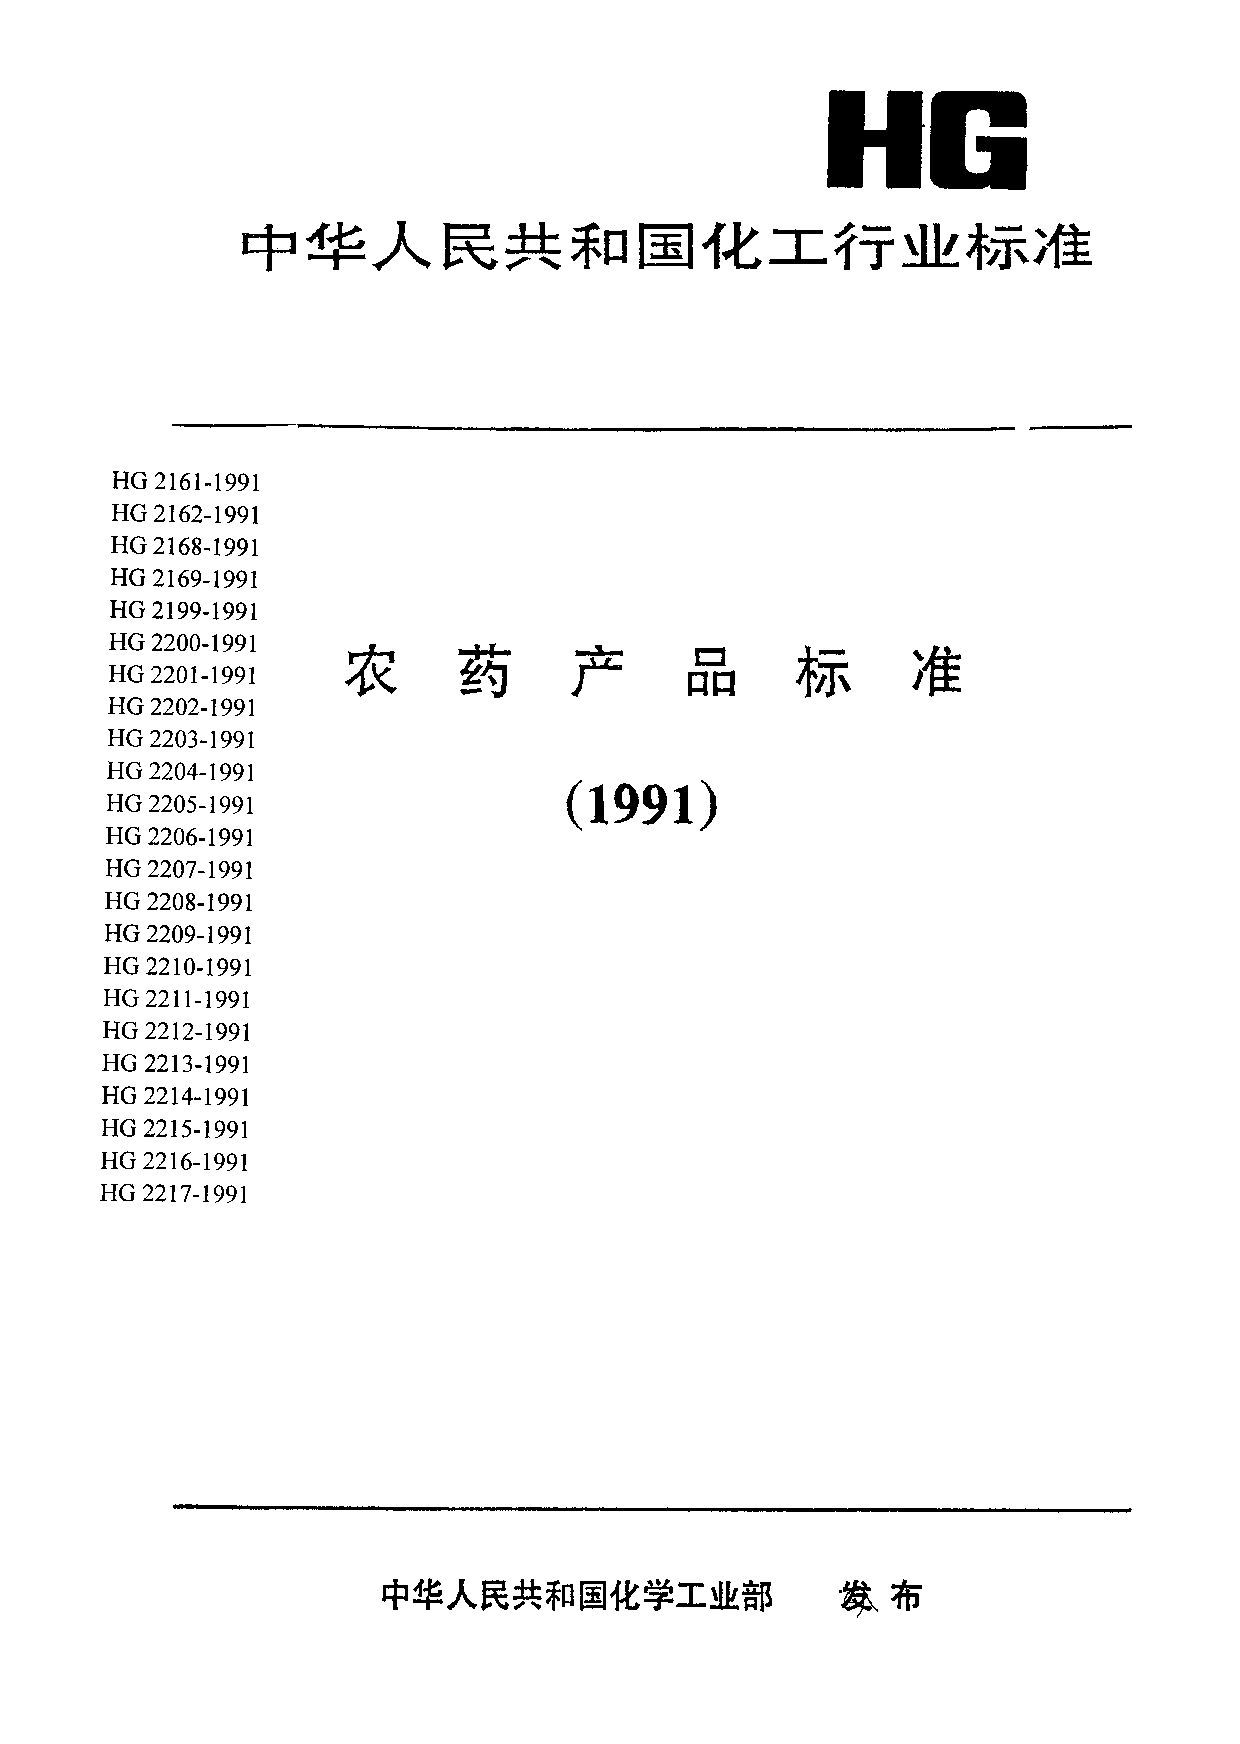 HG 2202-1991封面图